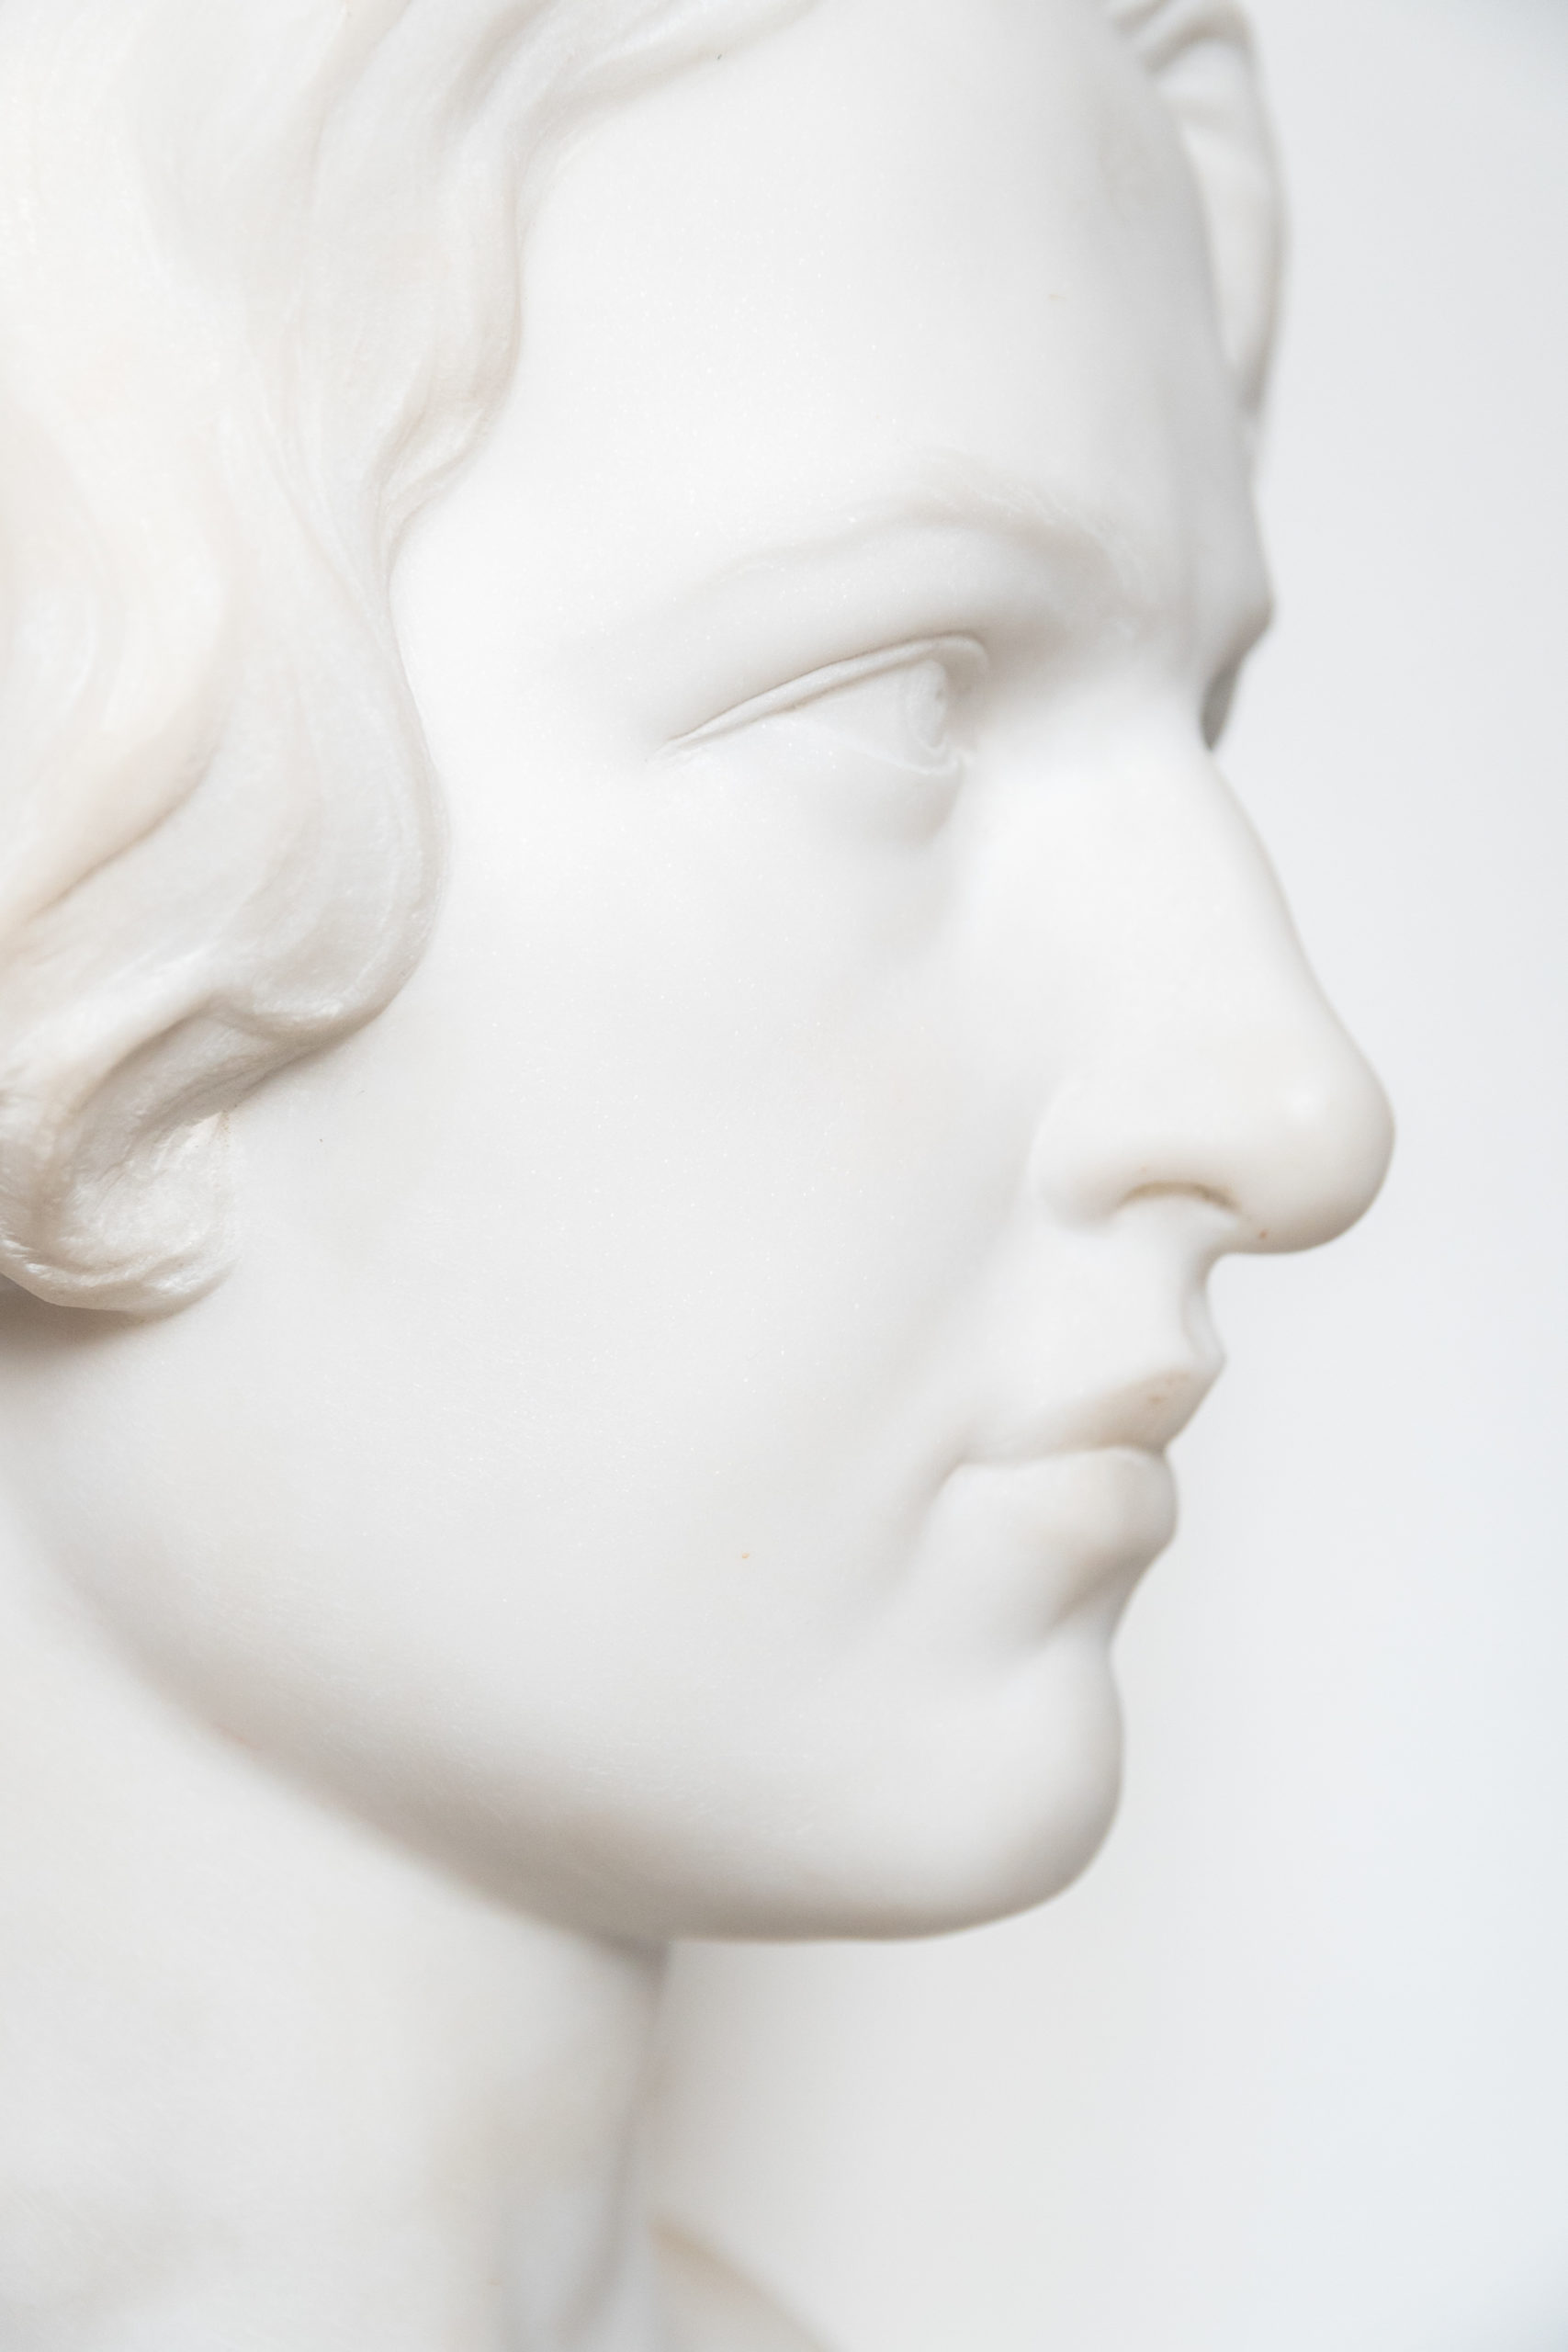 Buste-marbre-carrare-charles-ernest-diosi-sculpture-1920-Buste-femme-antiquaire-liège-aurore-morisse-affaire-conclue3